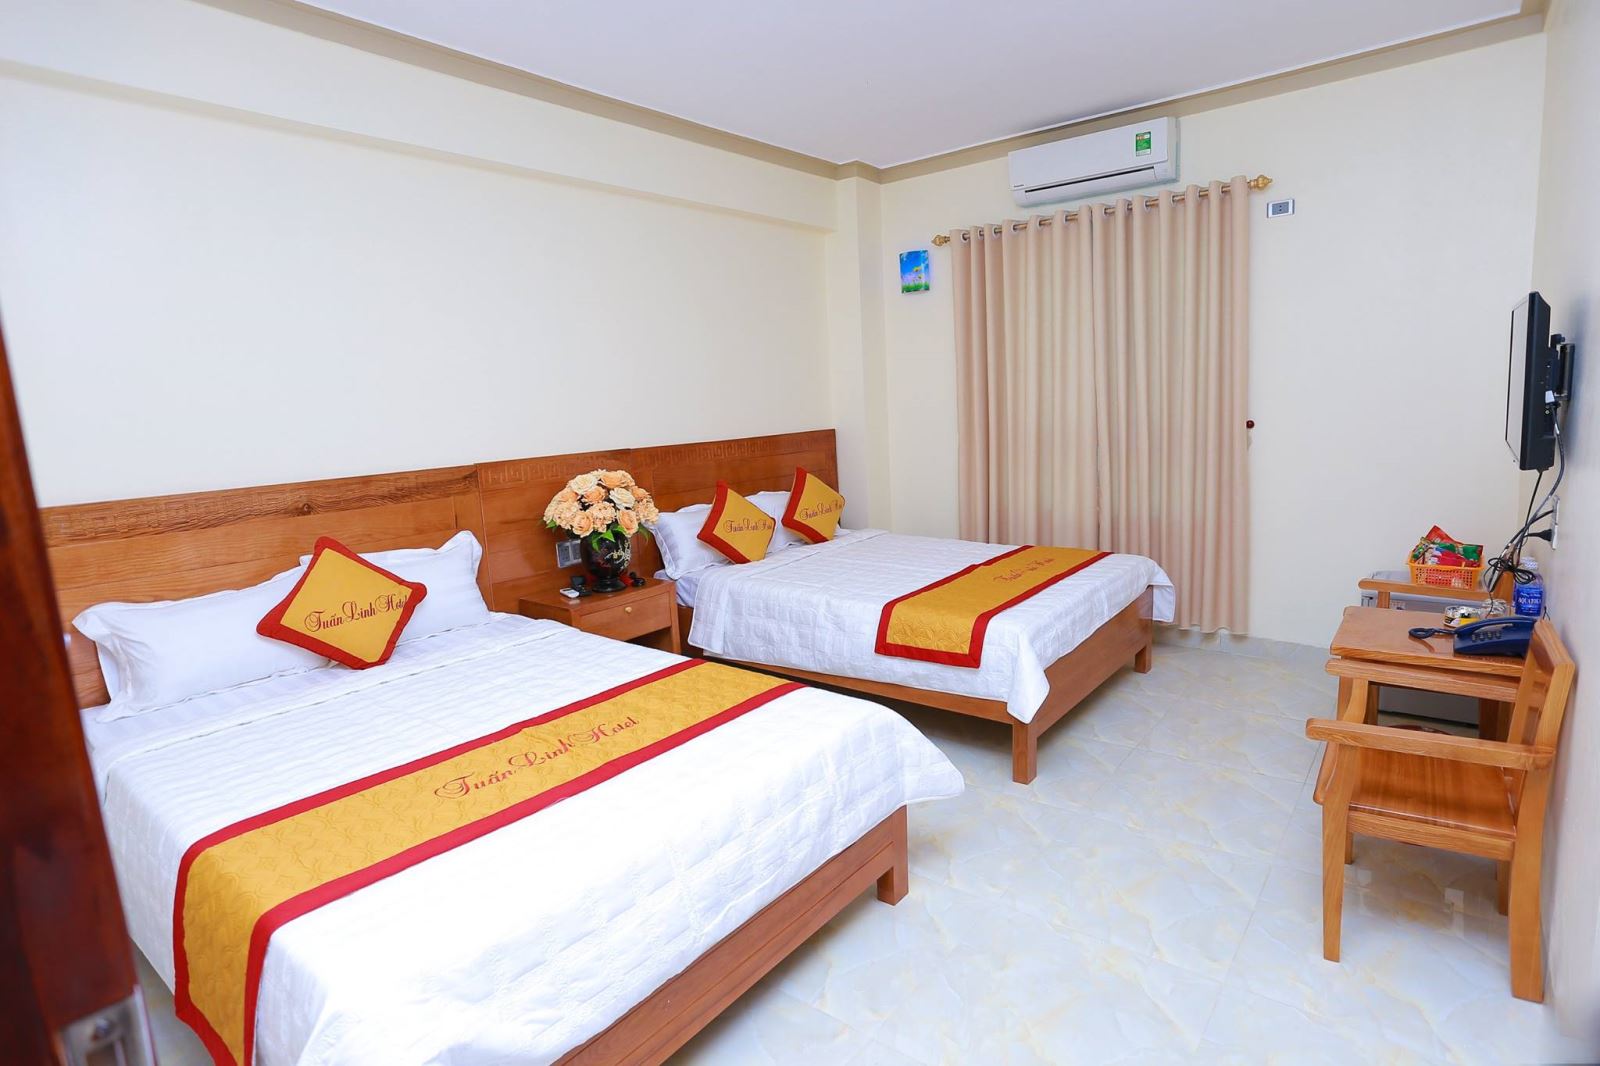 Phòng nghỉ tại khách sạn Tuấn Linh Hải Tiến